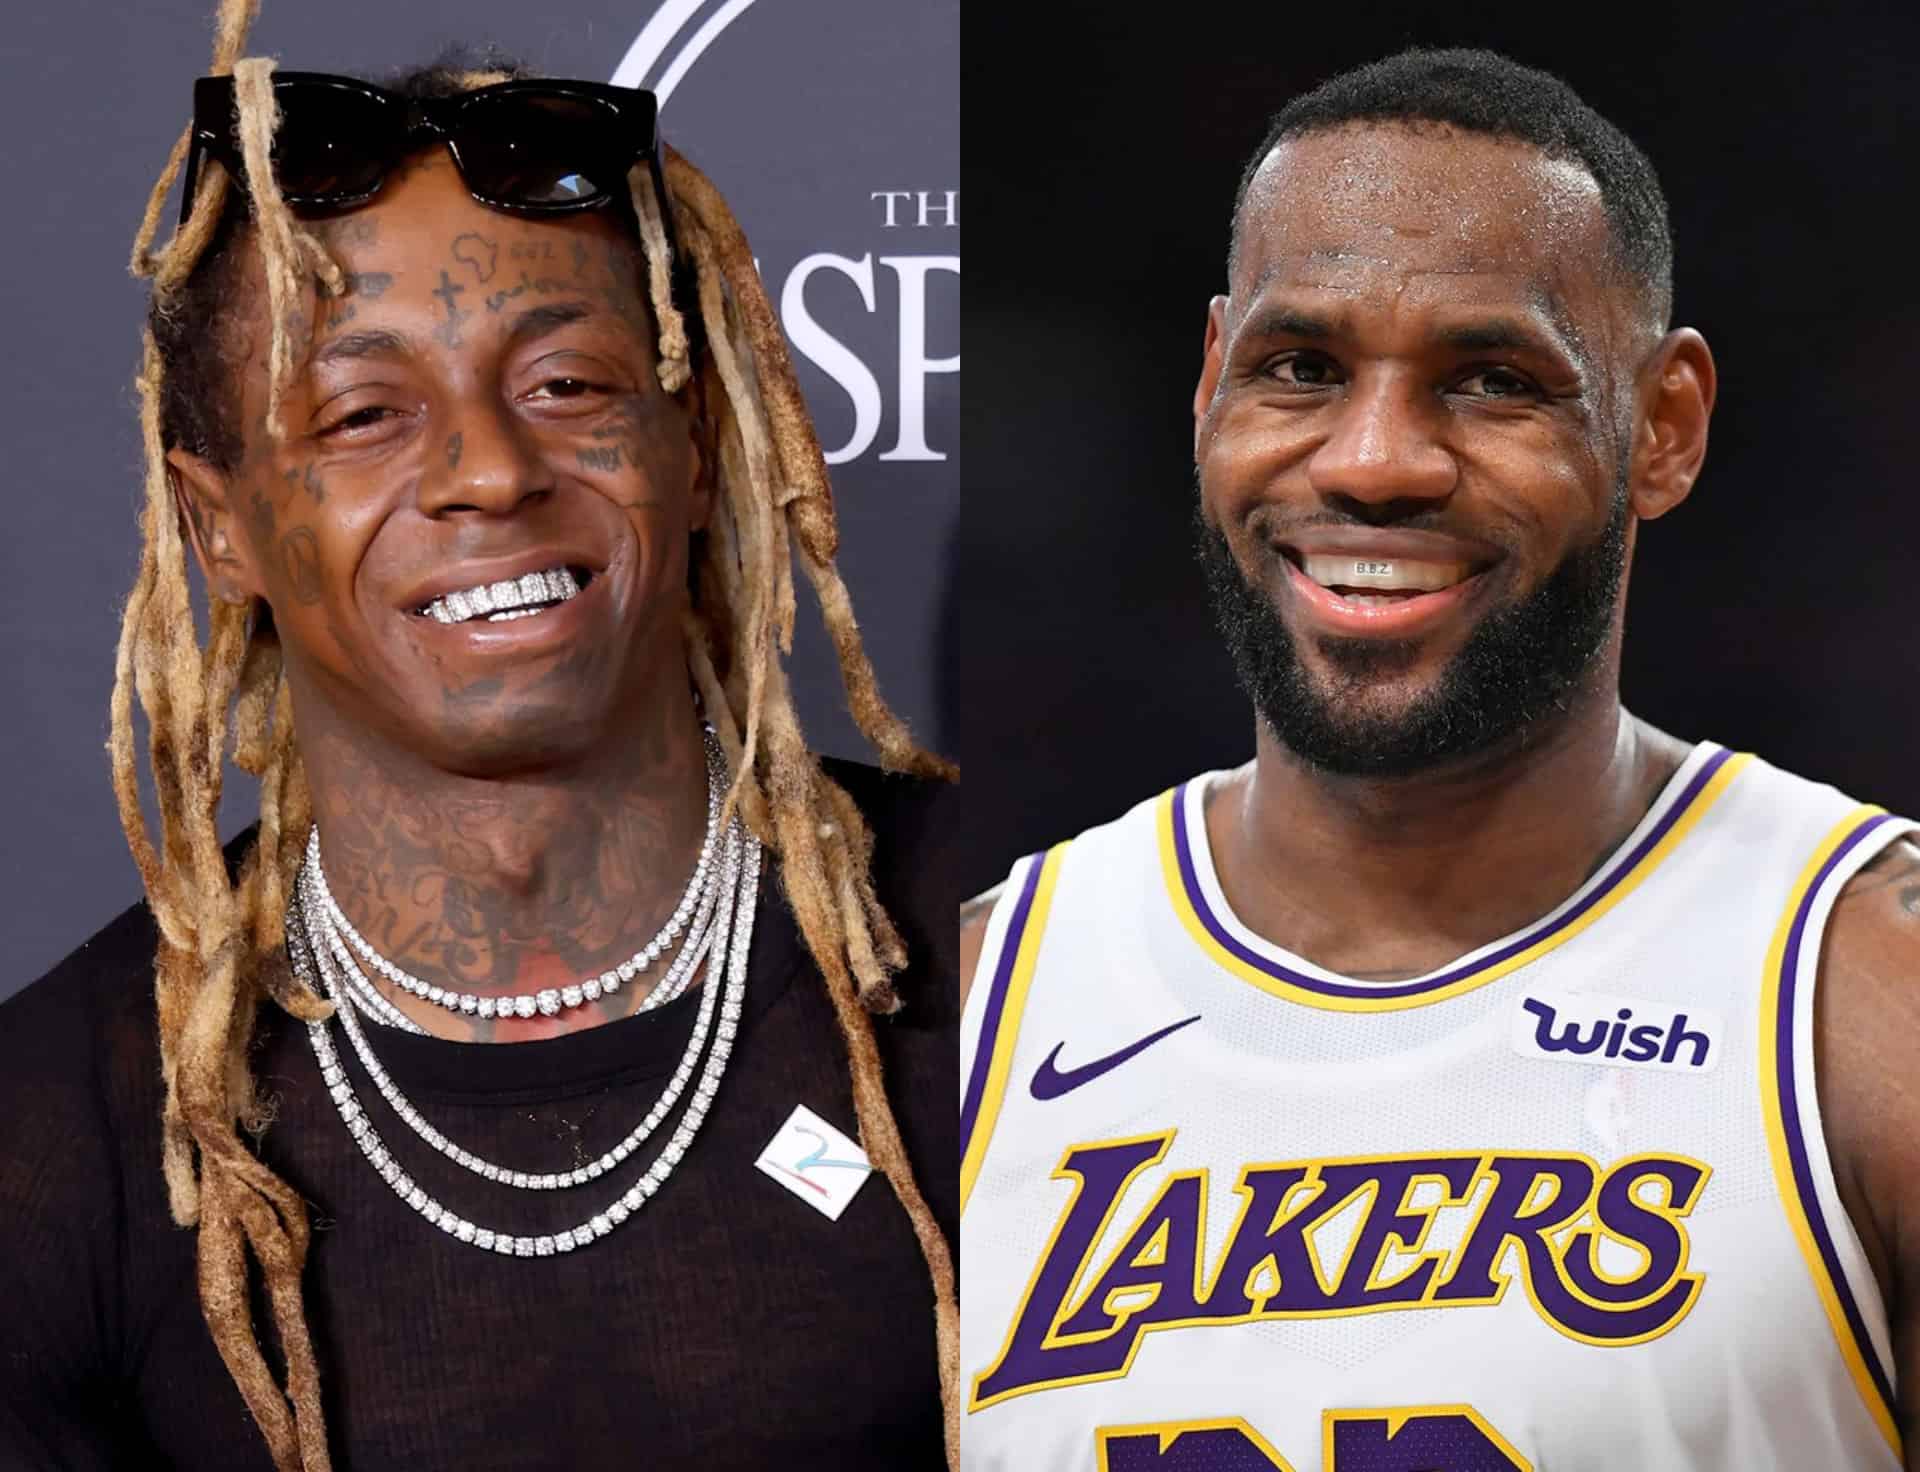 Lil Wayne Says He's Like LeBron James Of The Rap Game